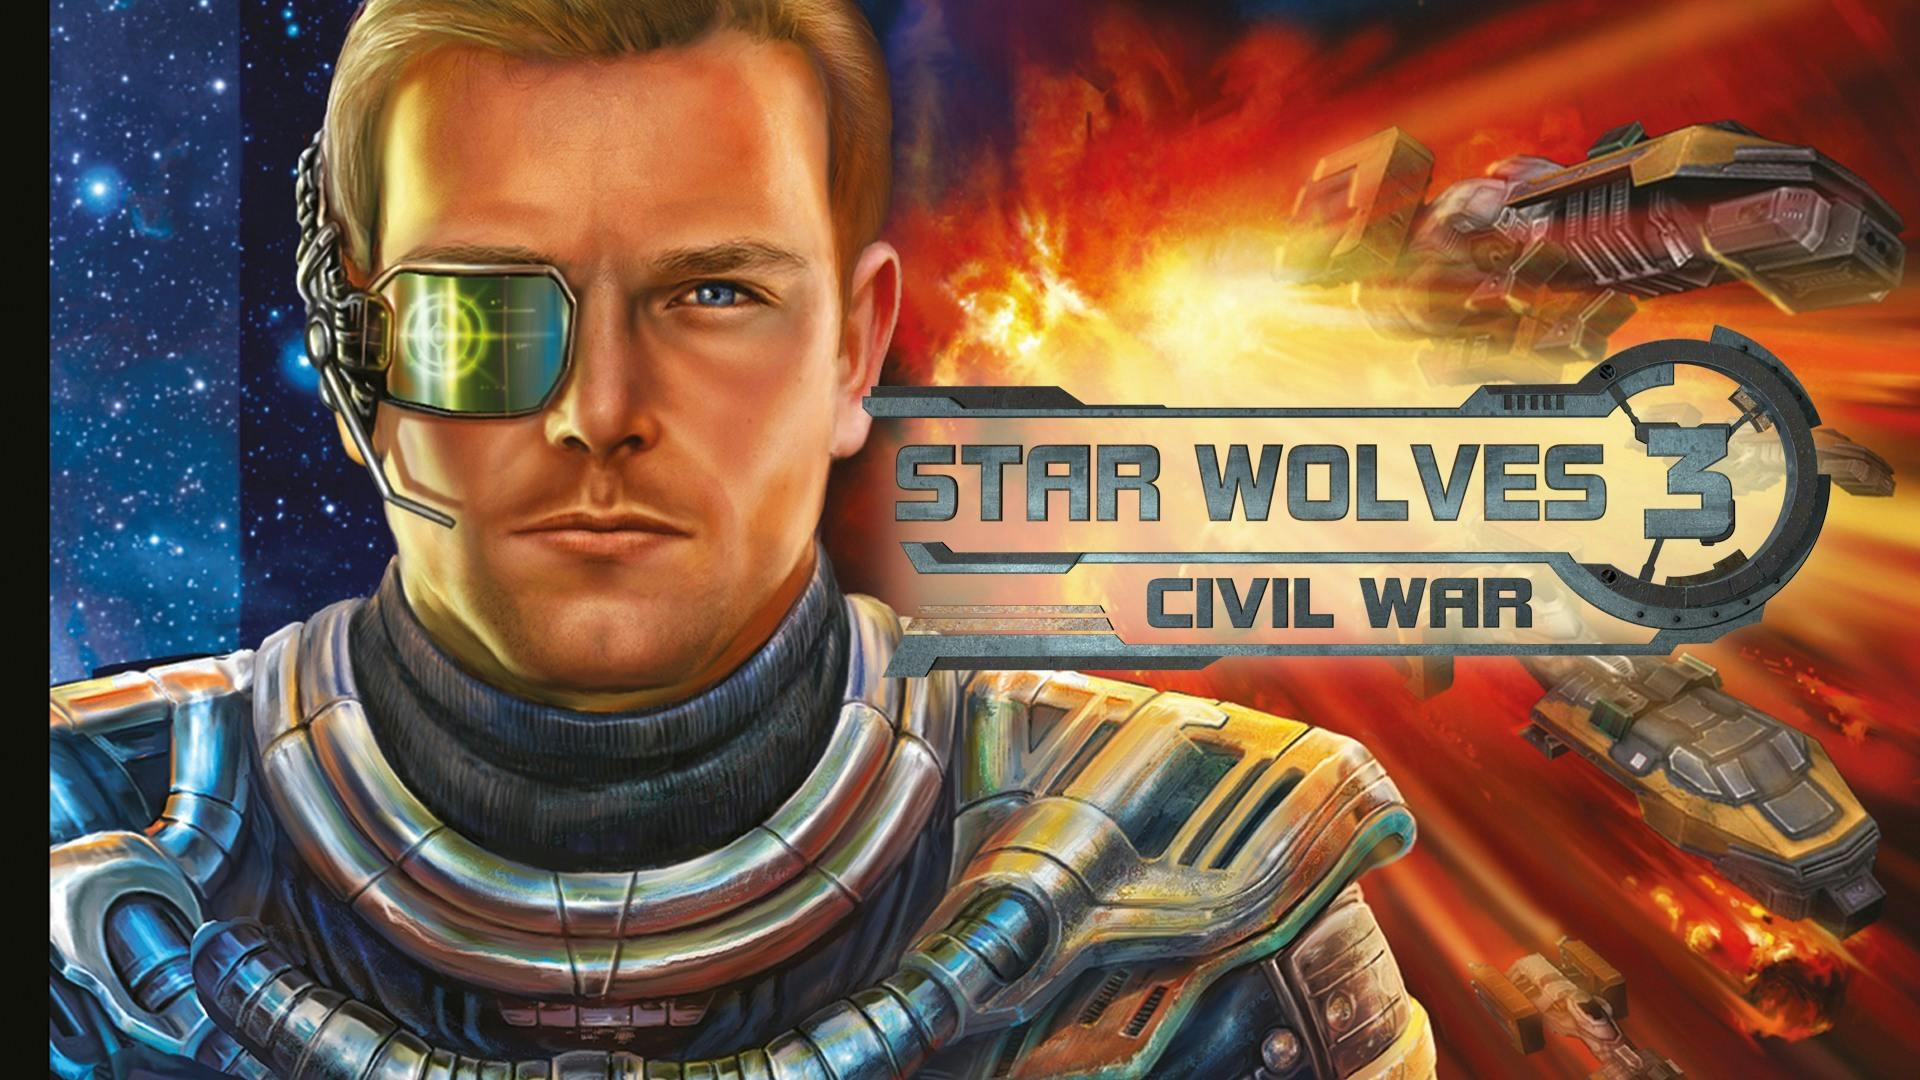 star-wolves-3-civil-war-pc-steam-game-fanatical